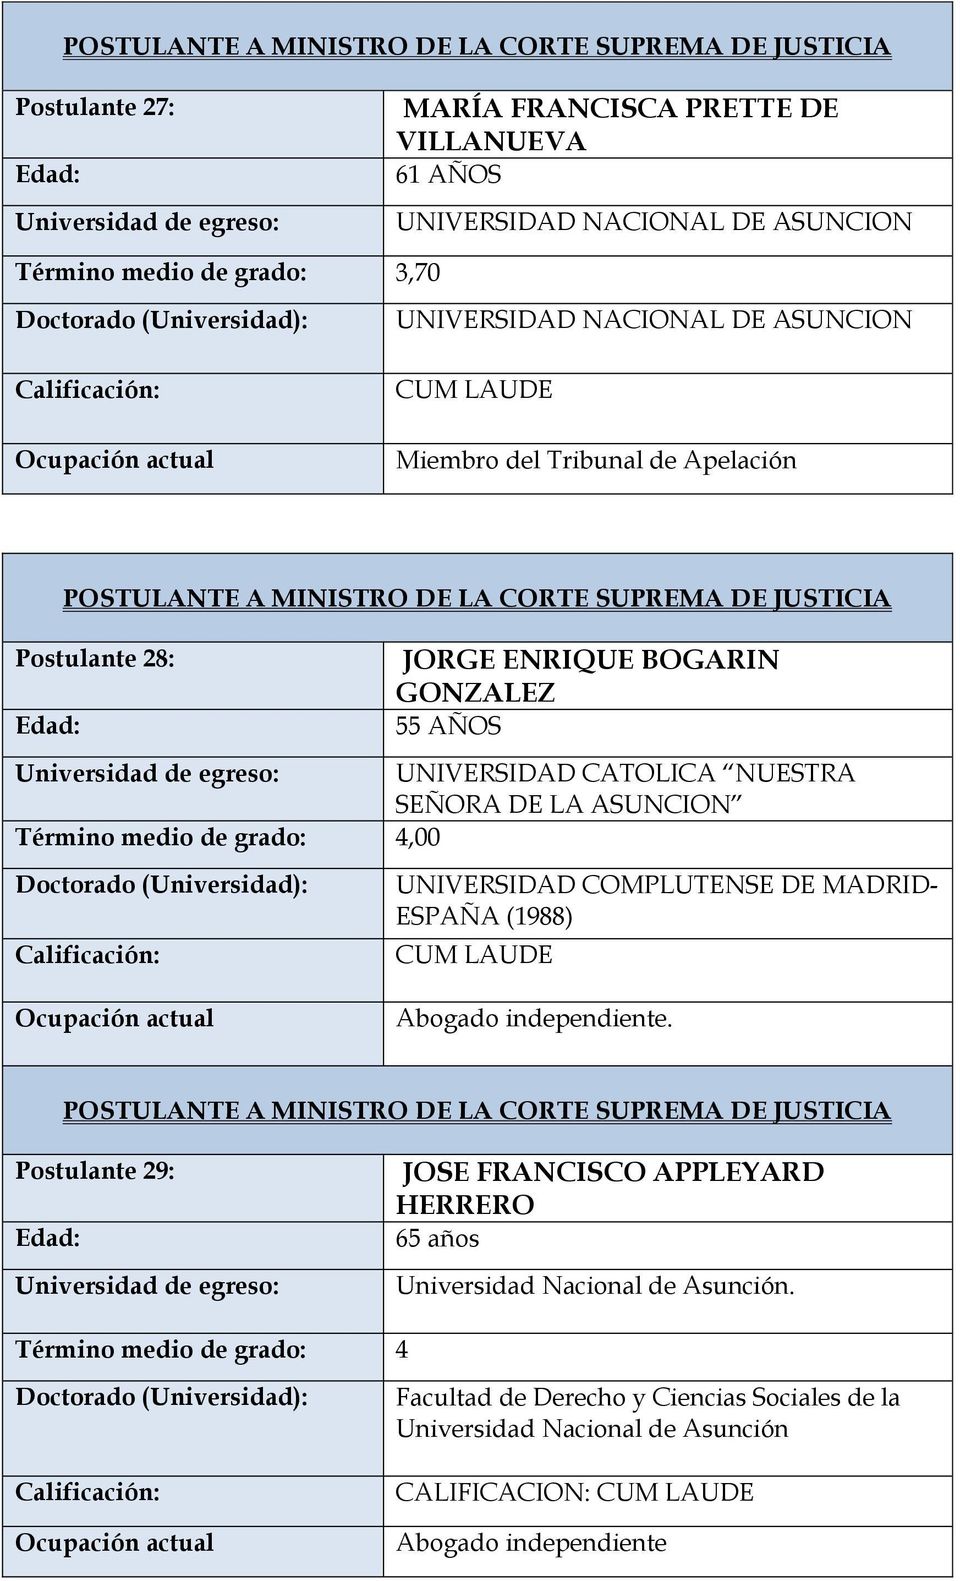 Término medio de grado: 4,00 UNIVERSIDAD COMPLUTENSE DE MADRID- ESPAÑA (1988).